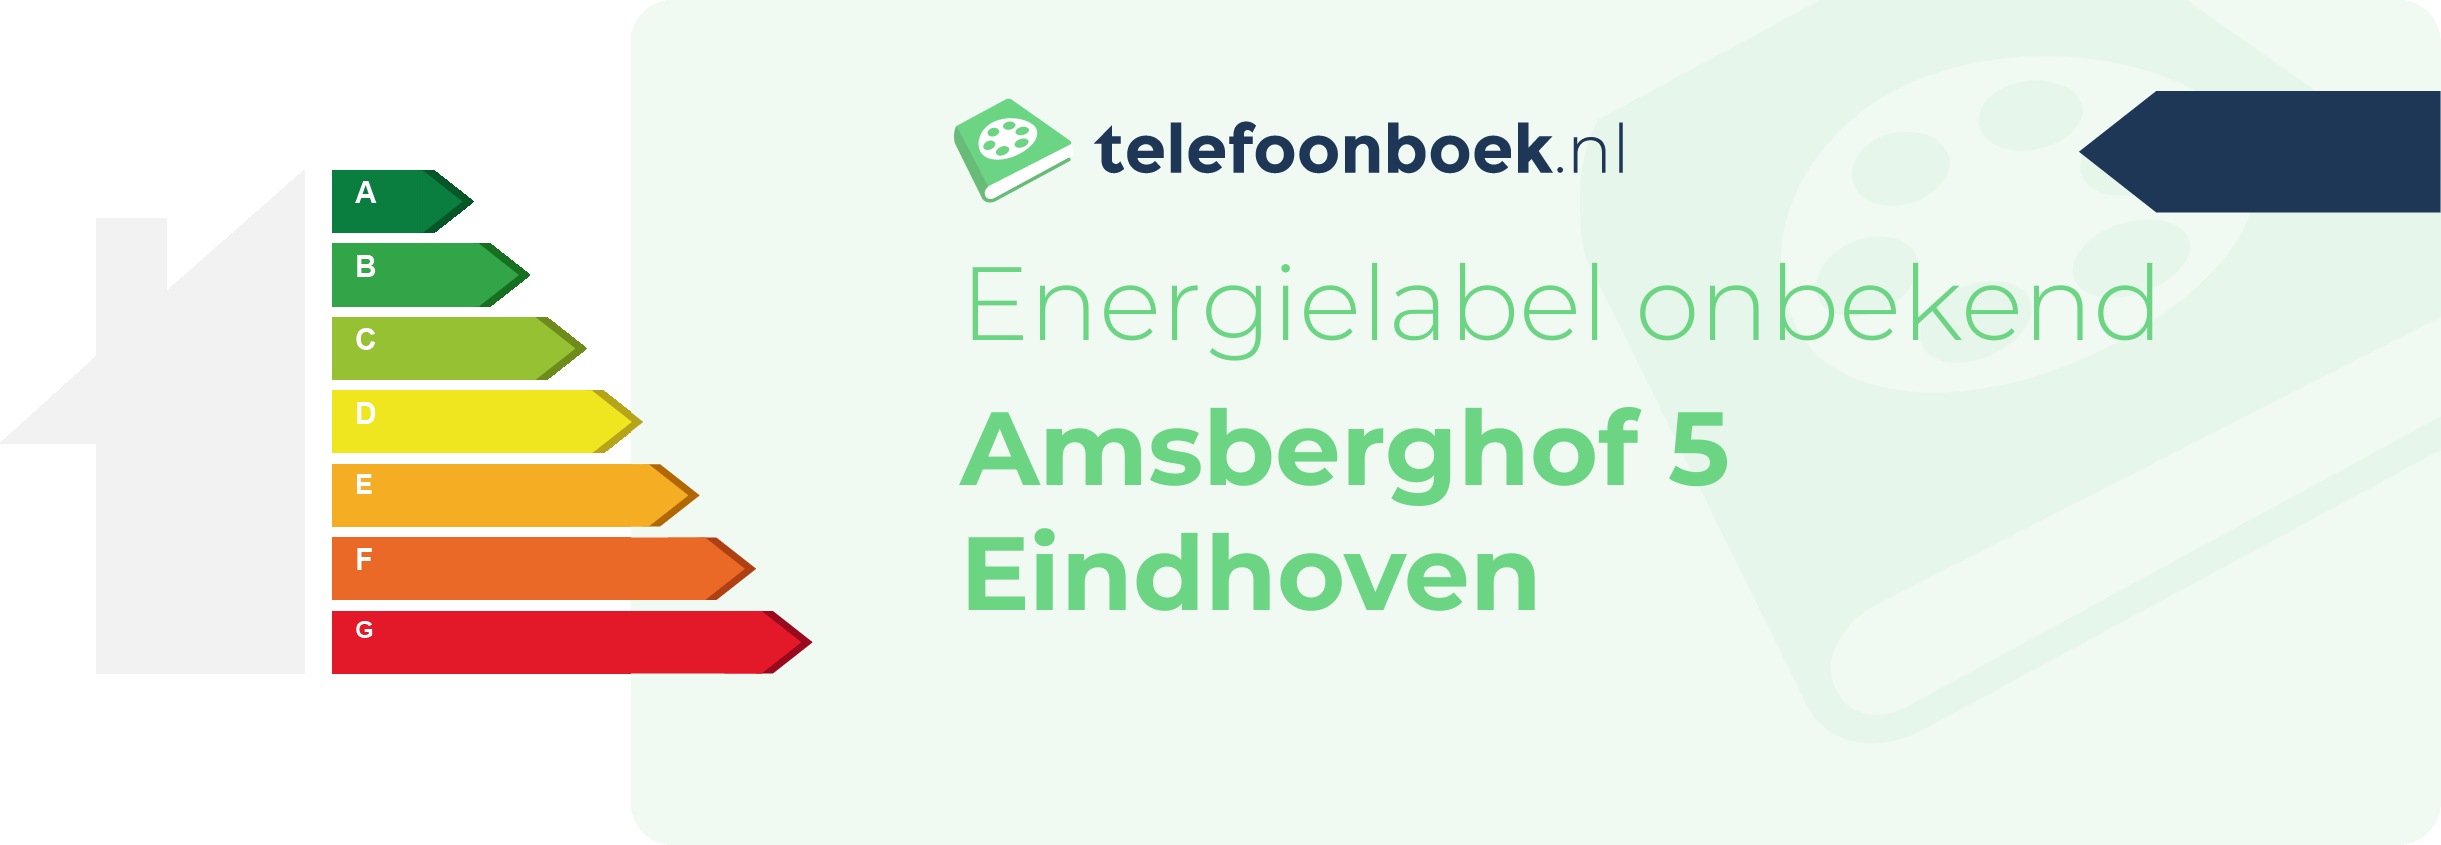 Energielabel Amsberghof 5 Eindhoven